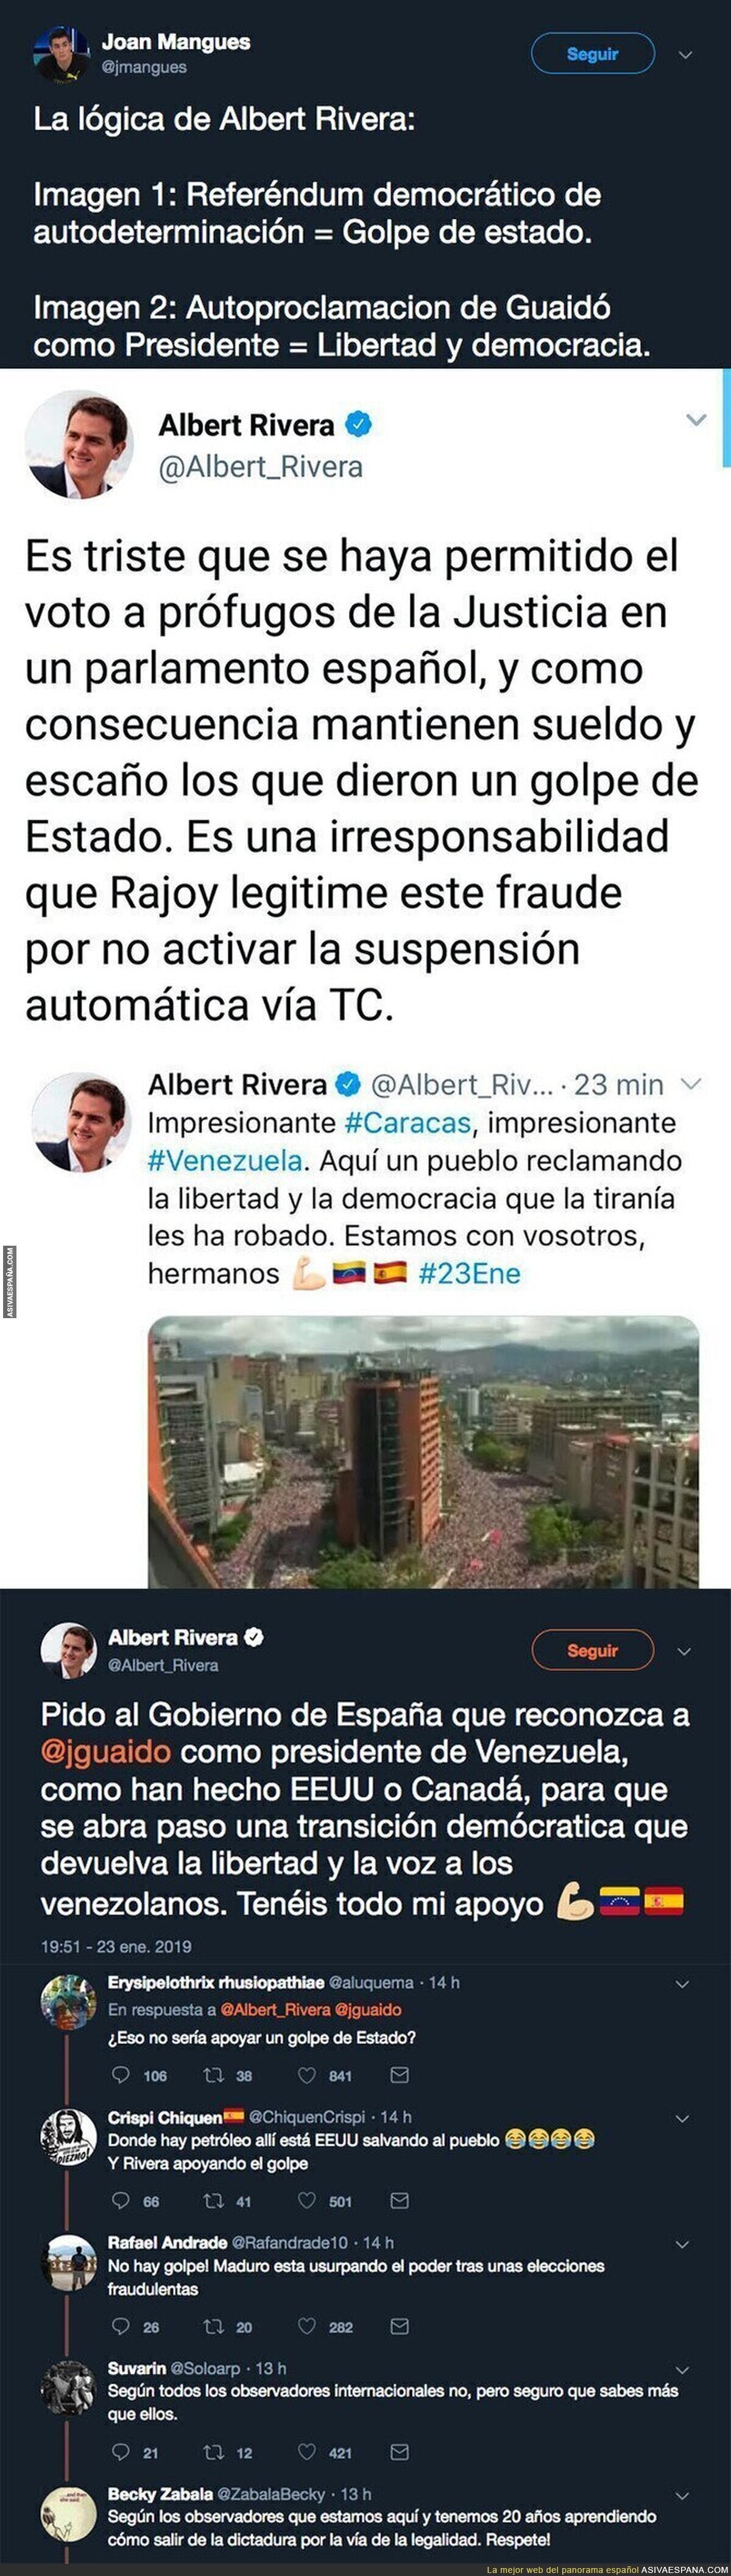 Albert Rivera apoyando un golpe de estado en Venezuela